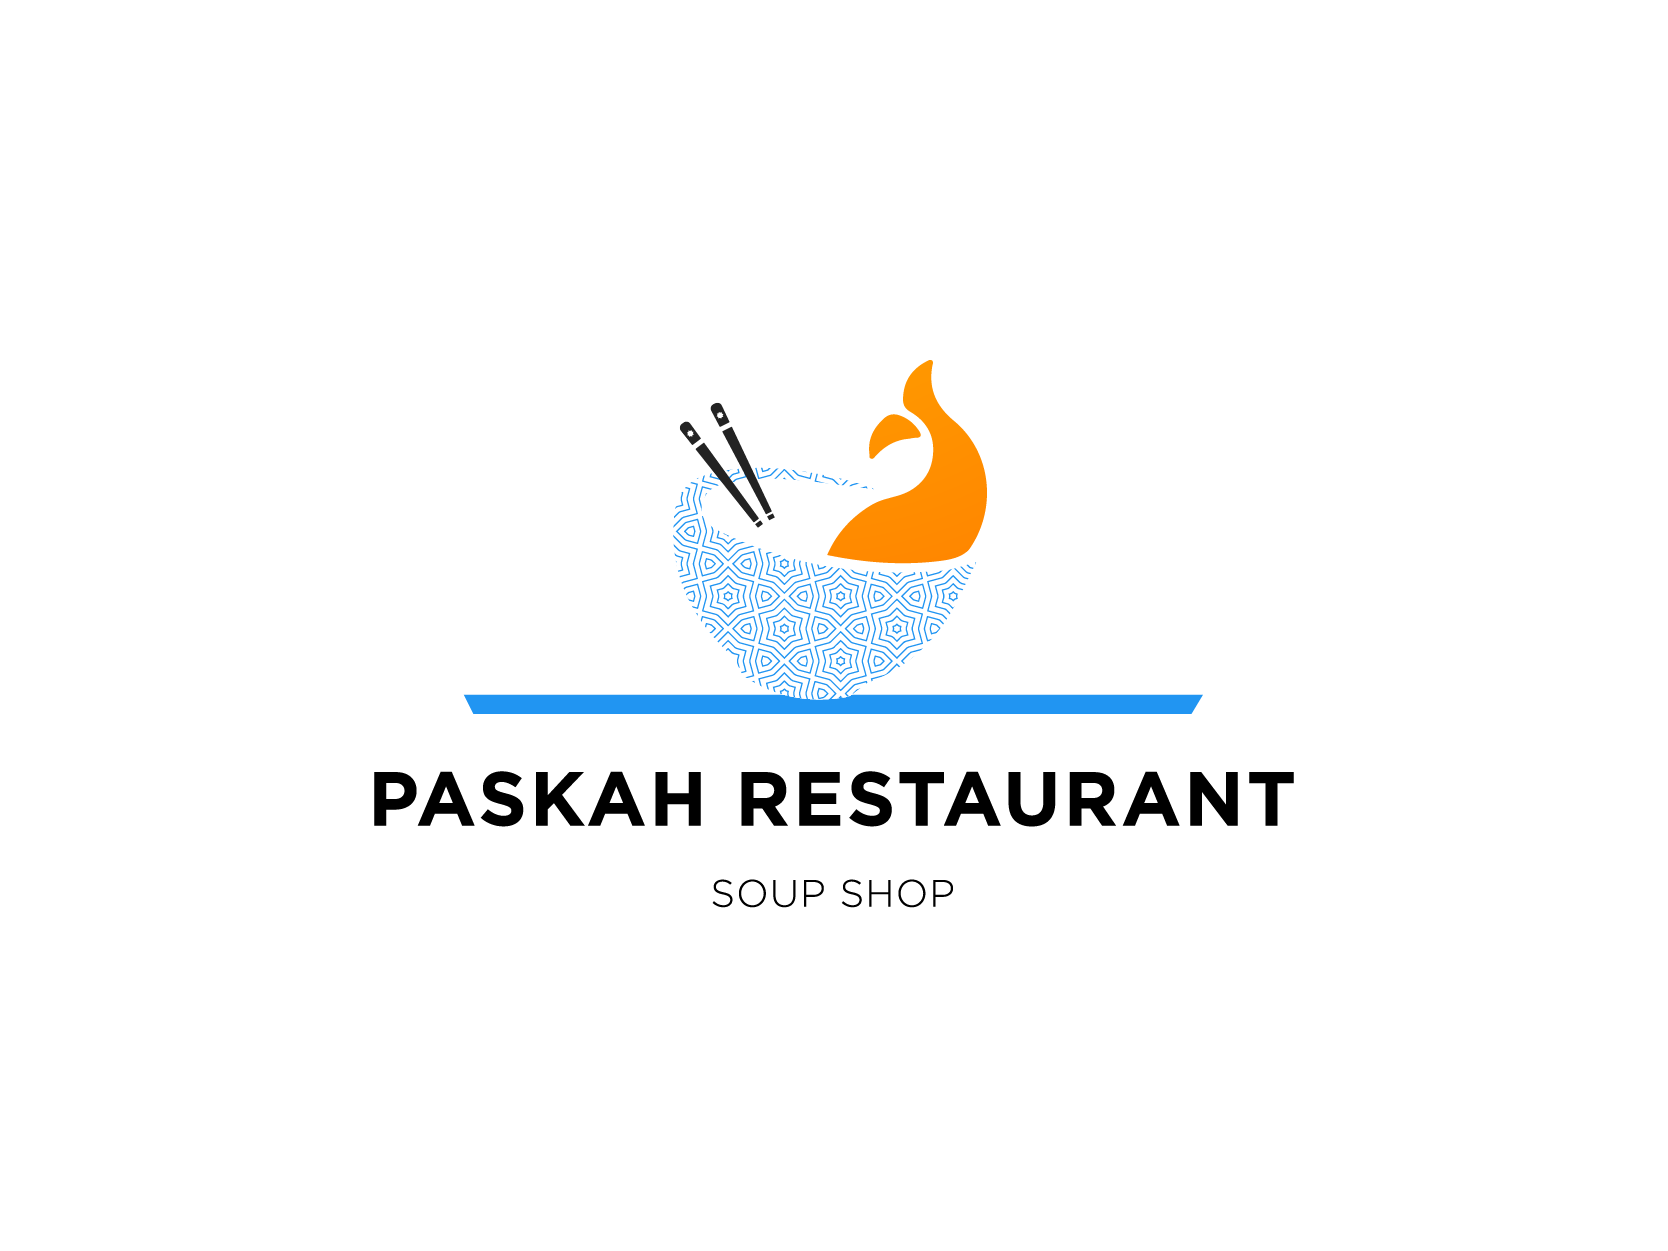  Paskah Restaurant Logo Design